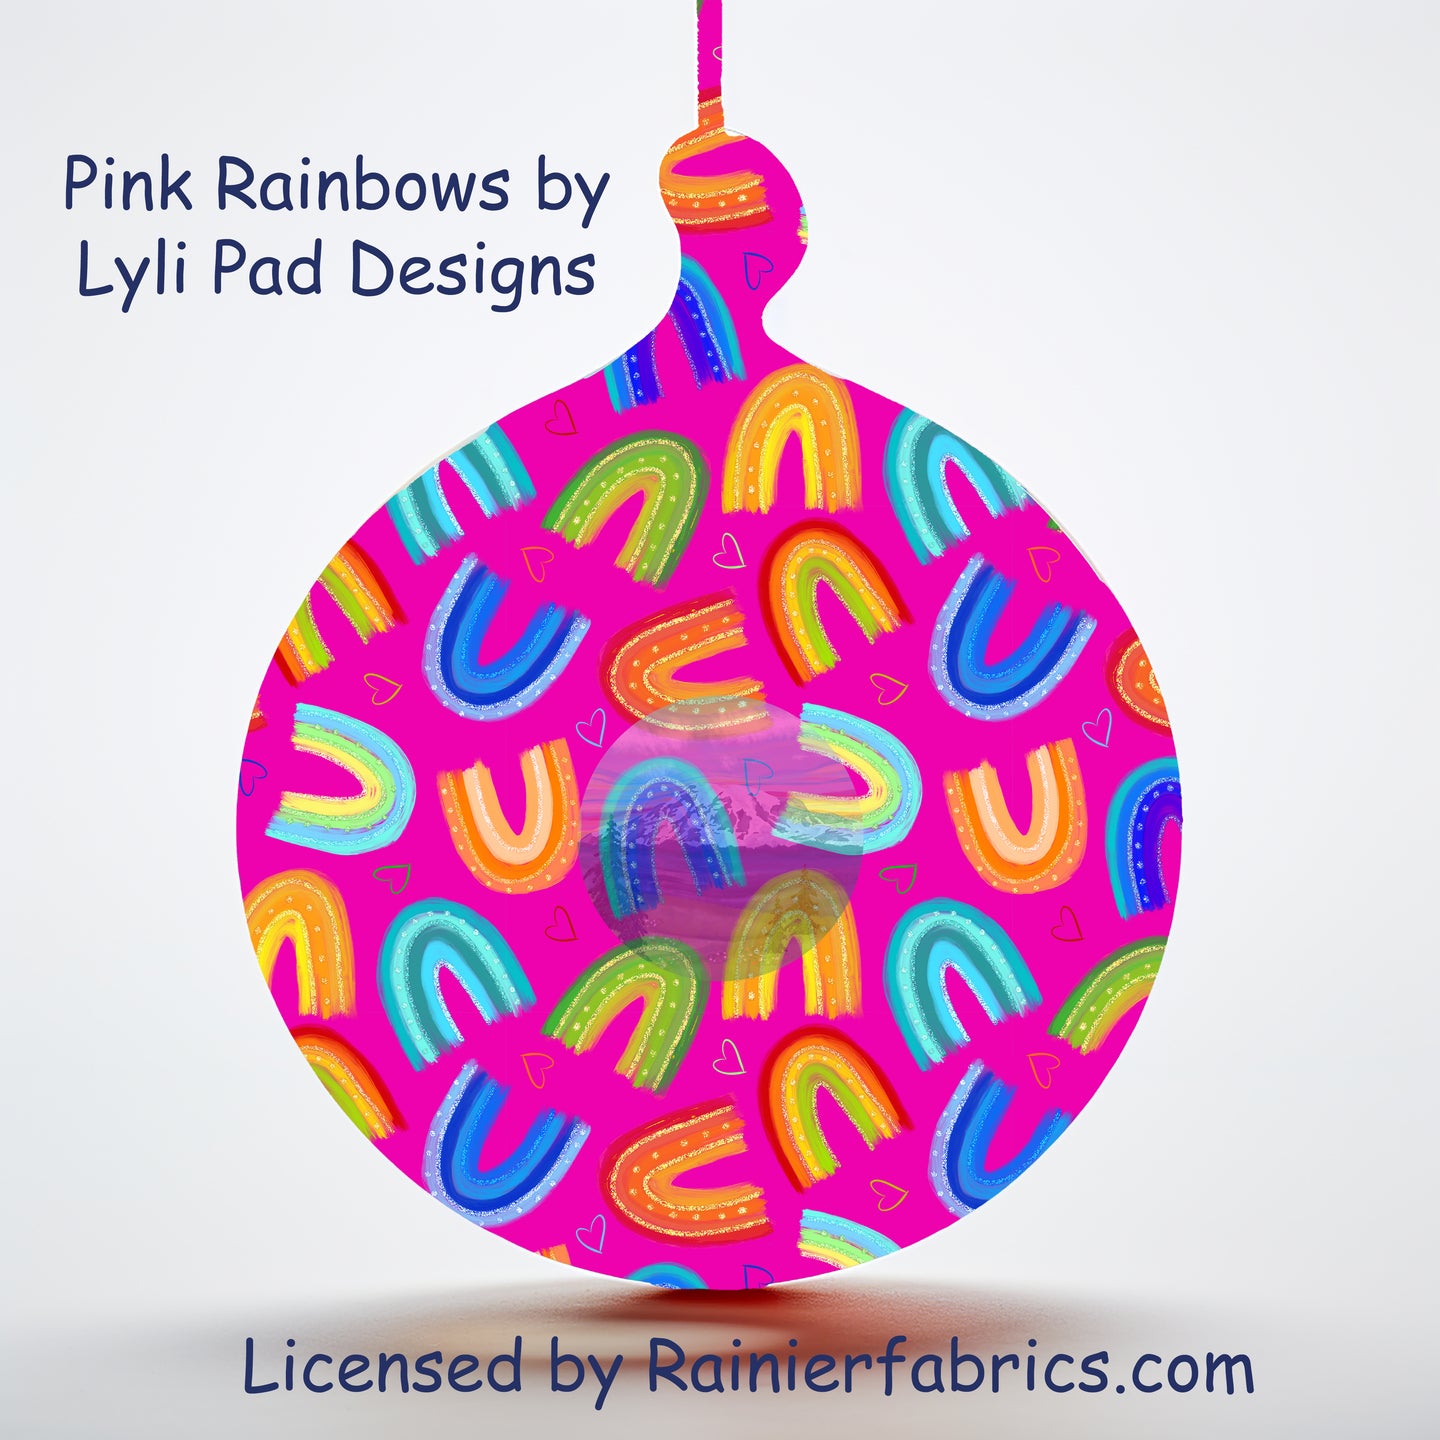 Pink Rainbows by LyliPad Designs